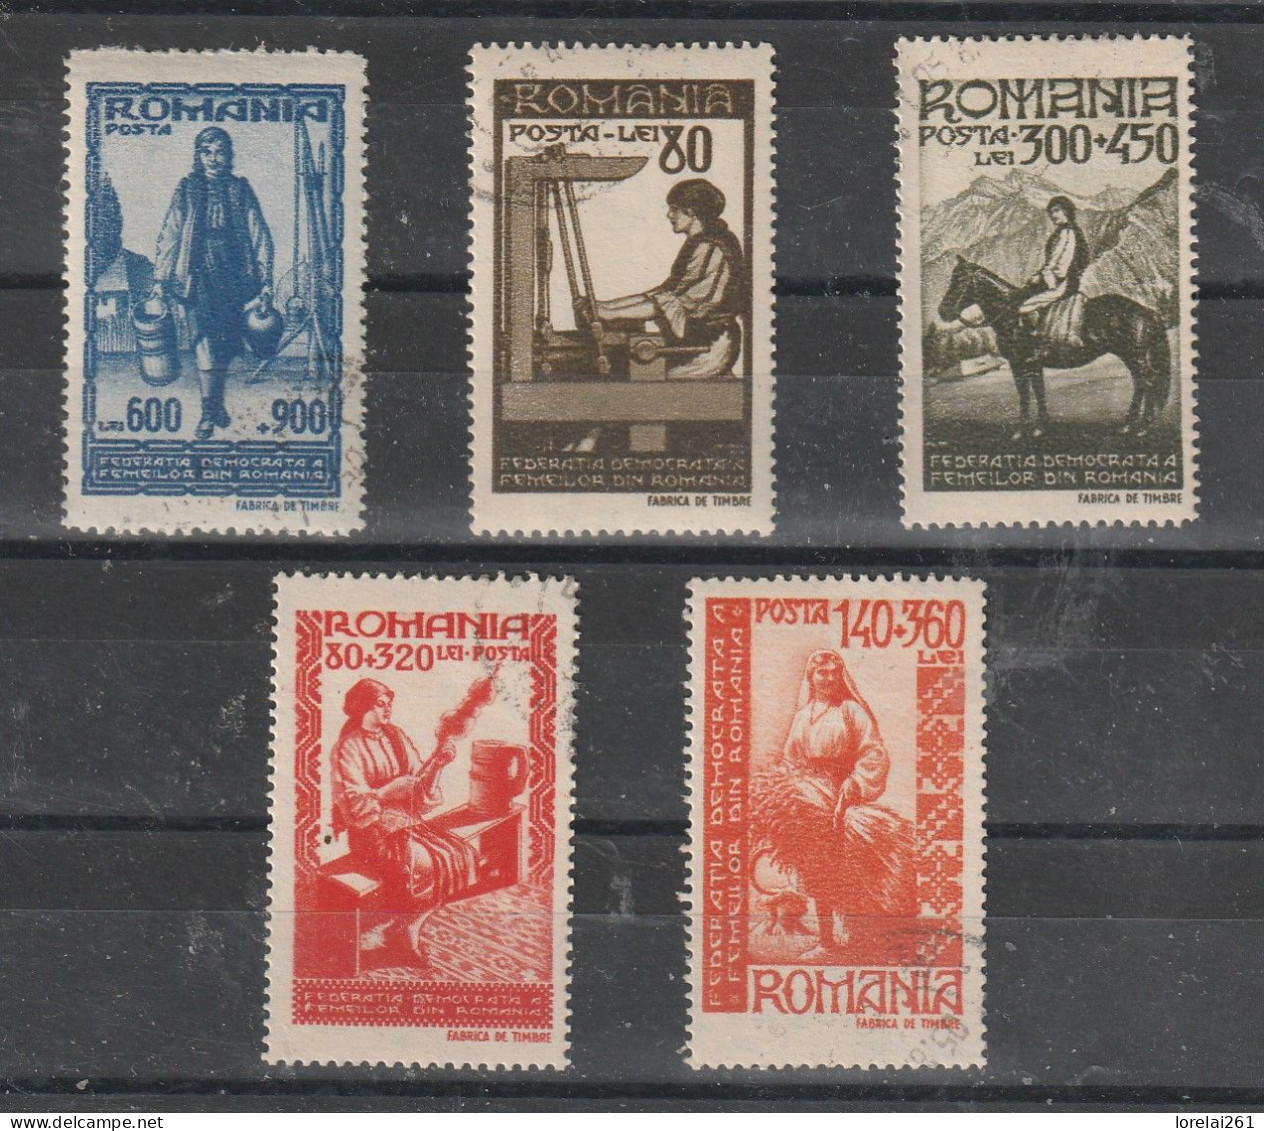 1946 - Federation Democratique Des Femmes Mi 1013/1017 - Used Stamps